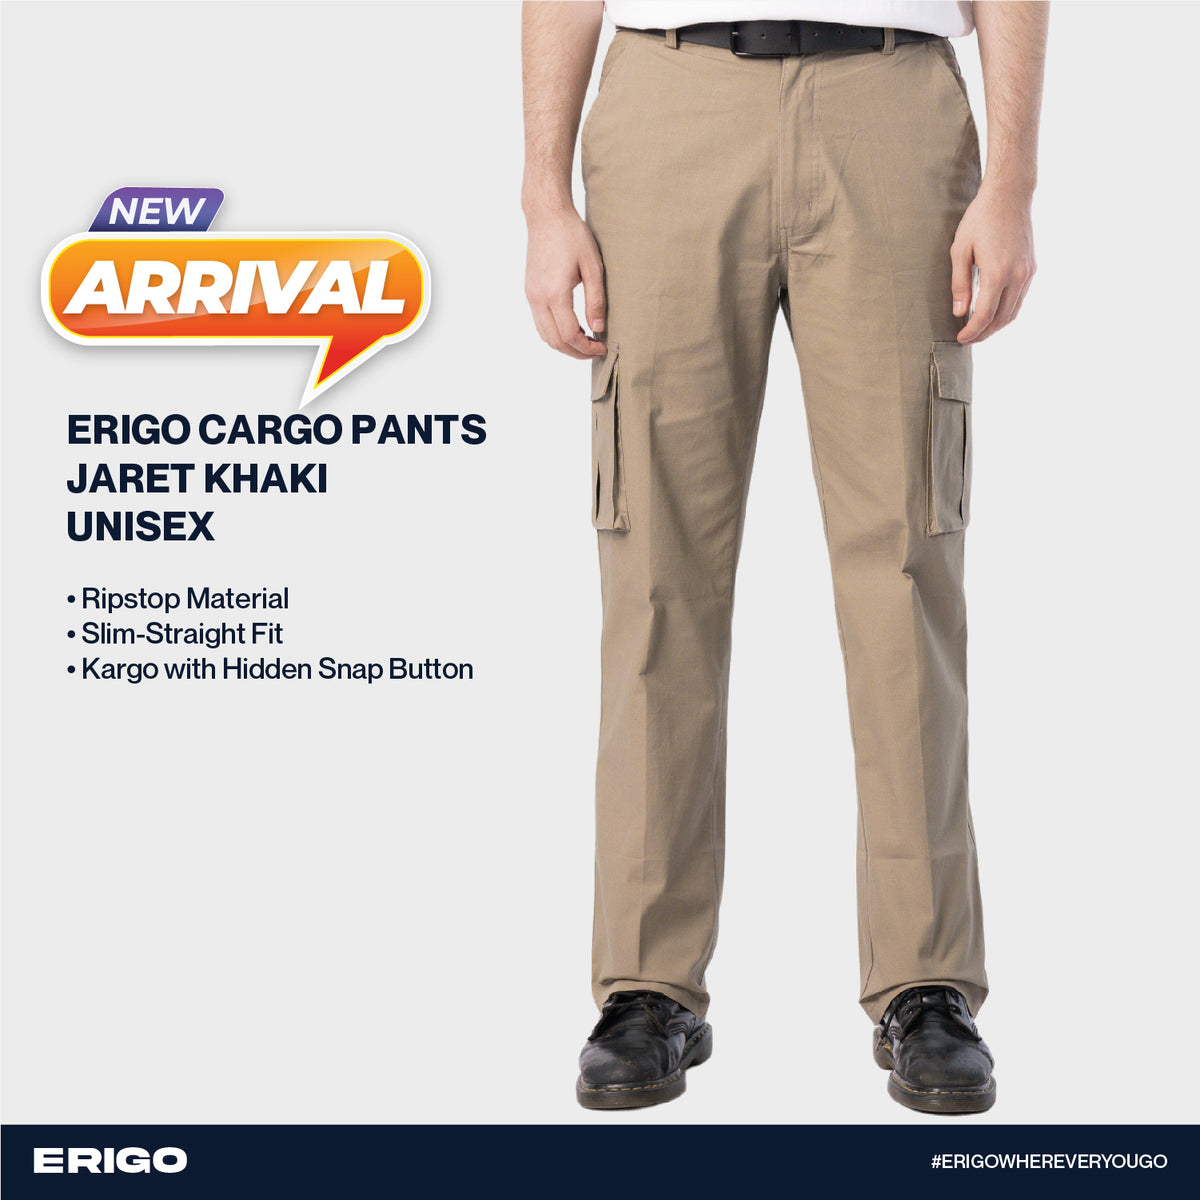 Erigo Cargo Pants Jaret Khaki Unisex